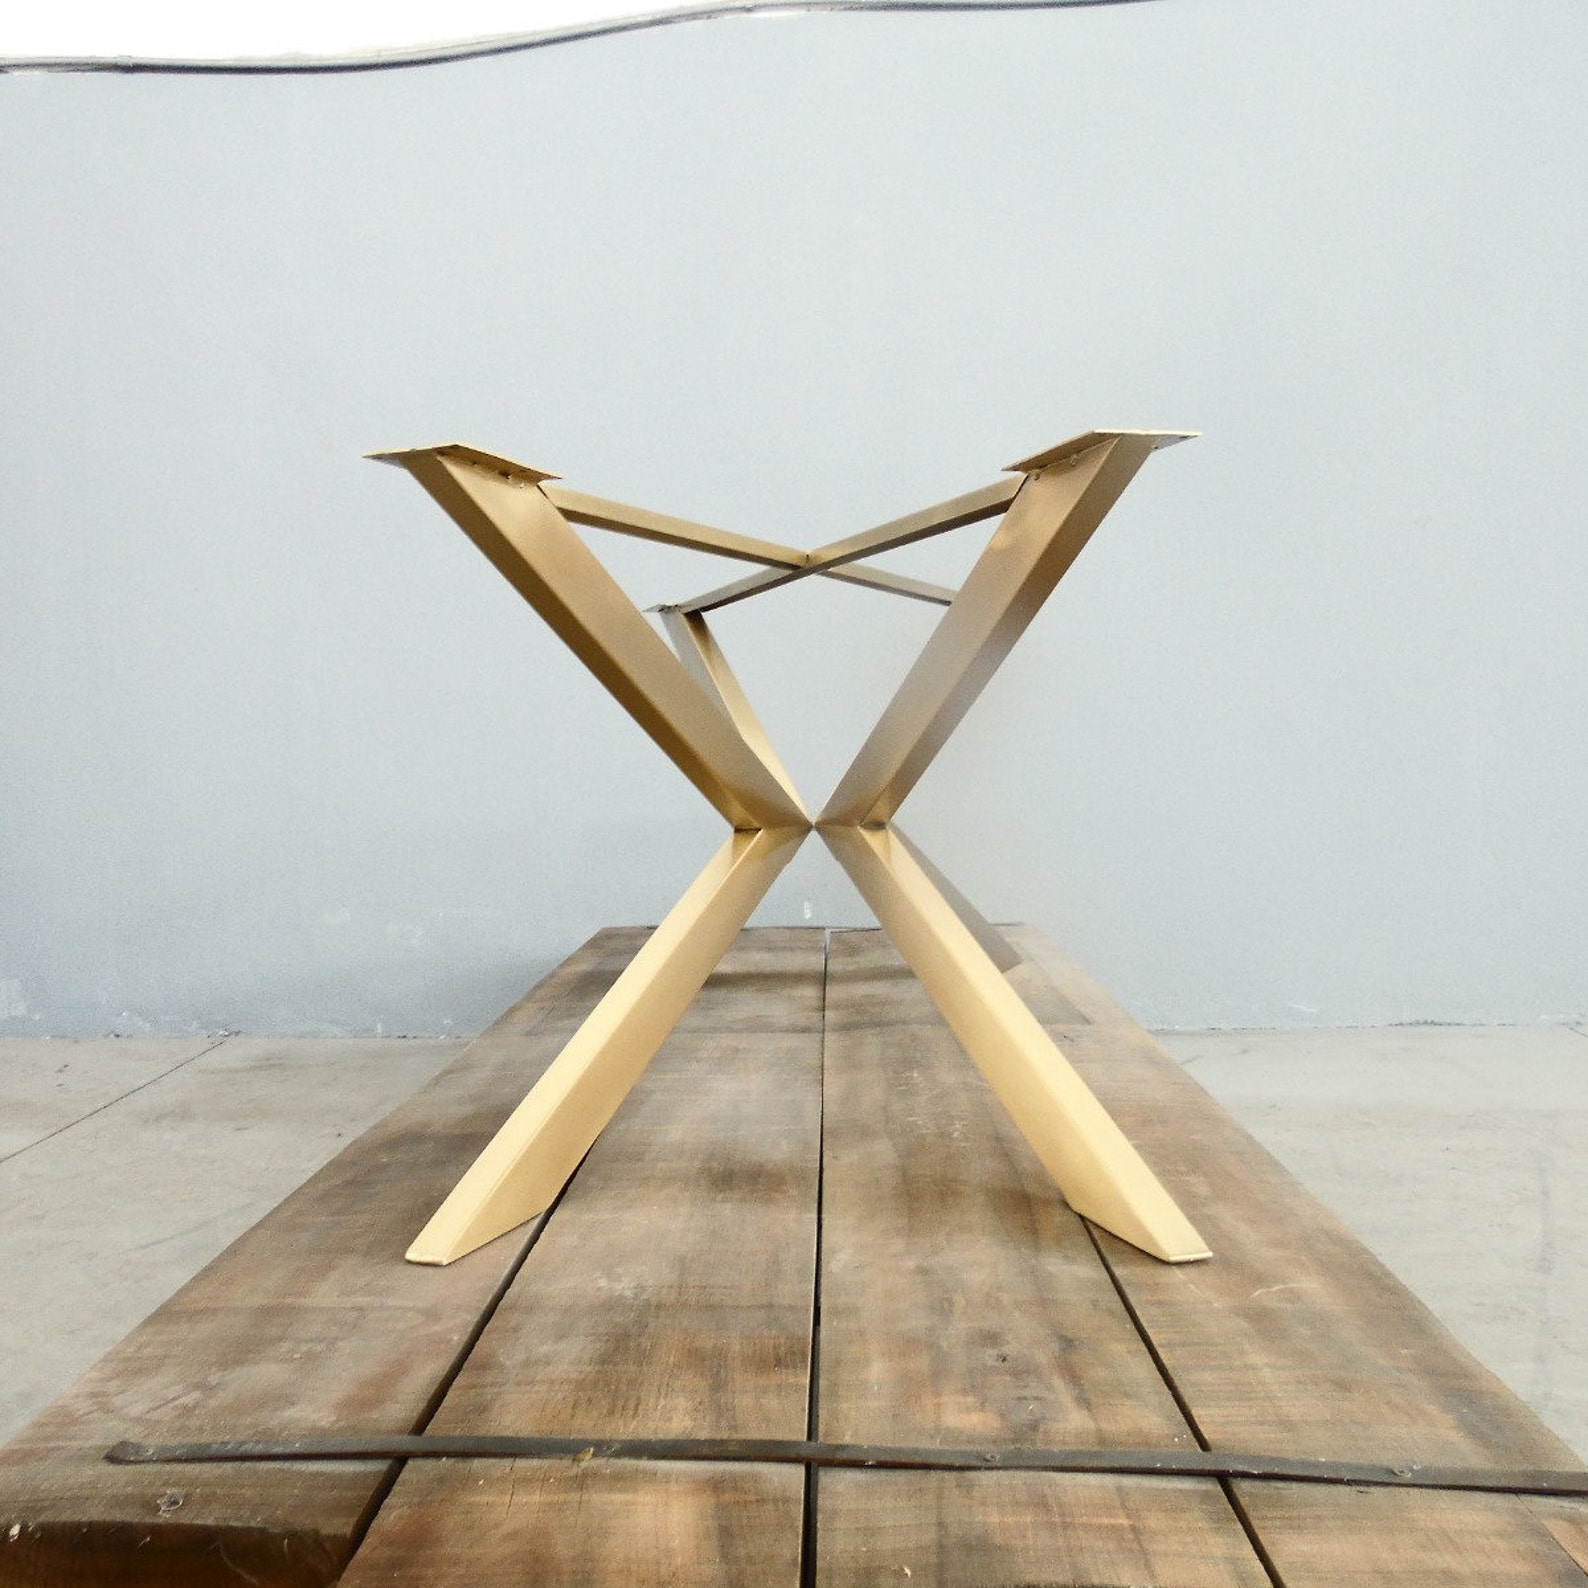 стеклянное подстолье для деревянного стола